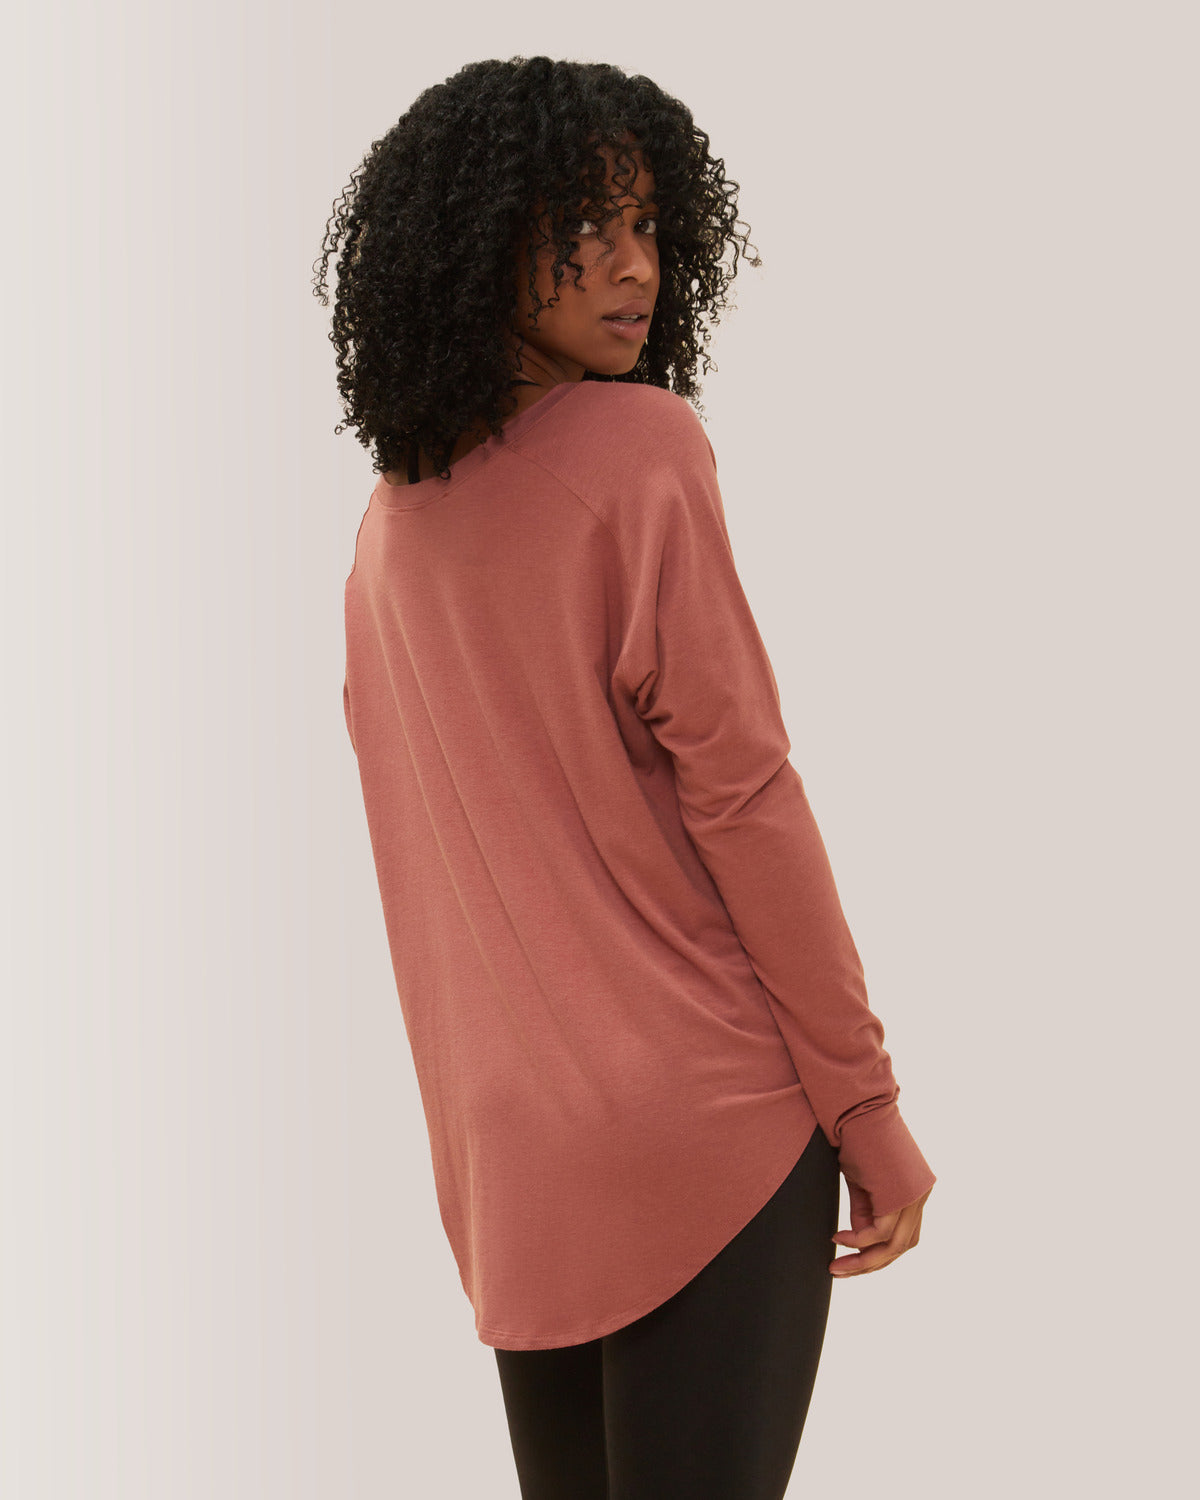 Femme qui porte le chandail à manche longue Cozy de Rose Boreal./ Women wearing the Cozy Long Sleeve Shirt by Rose Boreal. -Dahlia